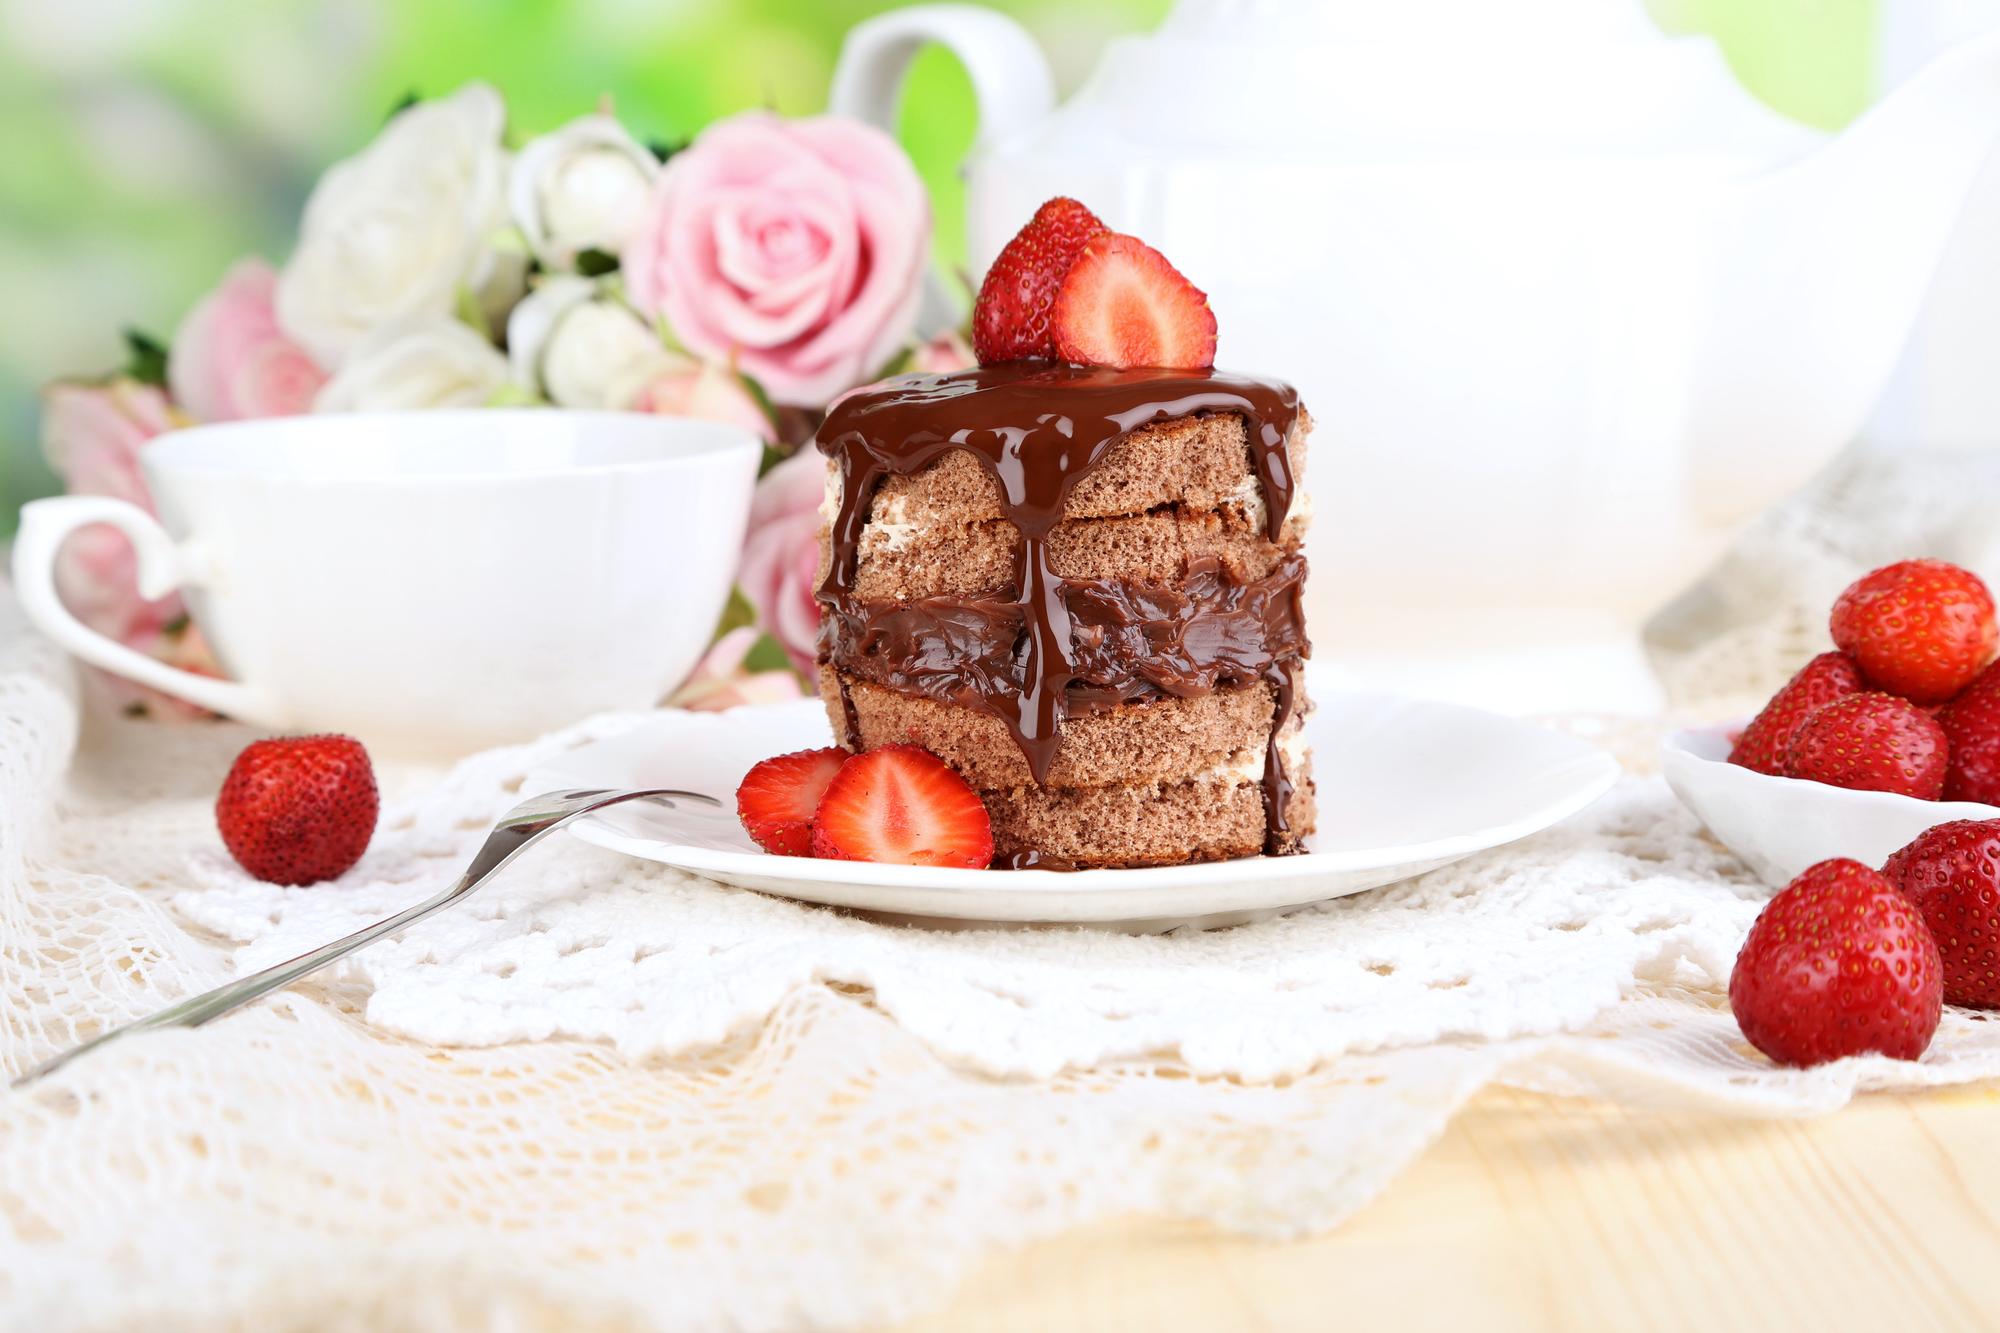 Шоколадный торт с клубникой на деревянном столе на естественном фоне